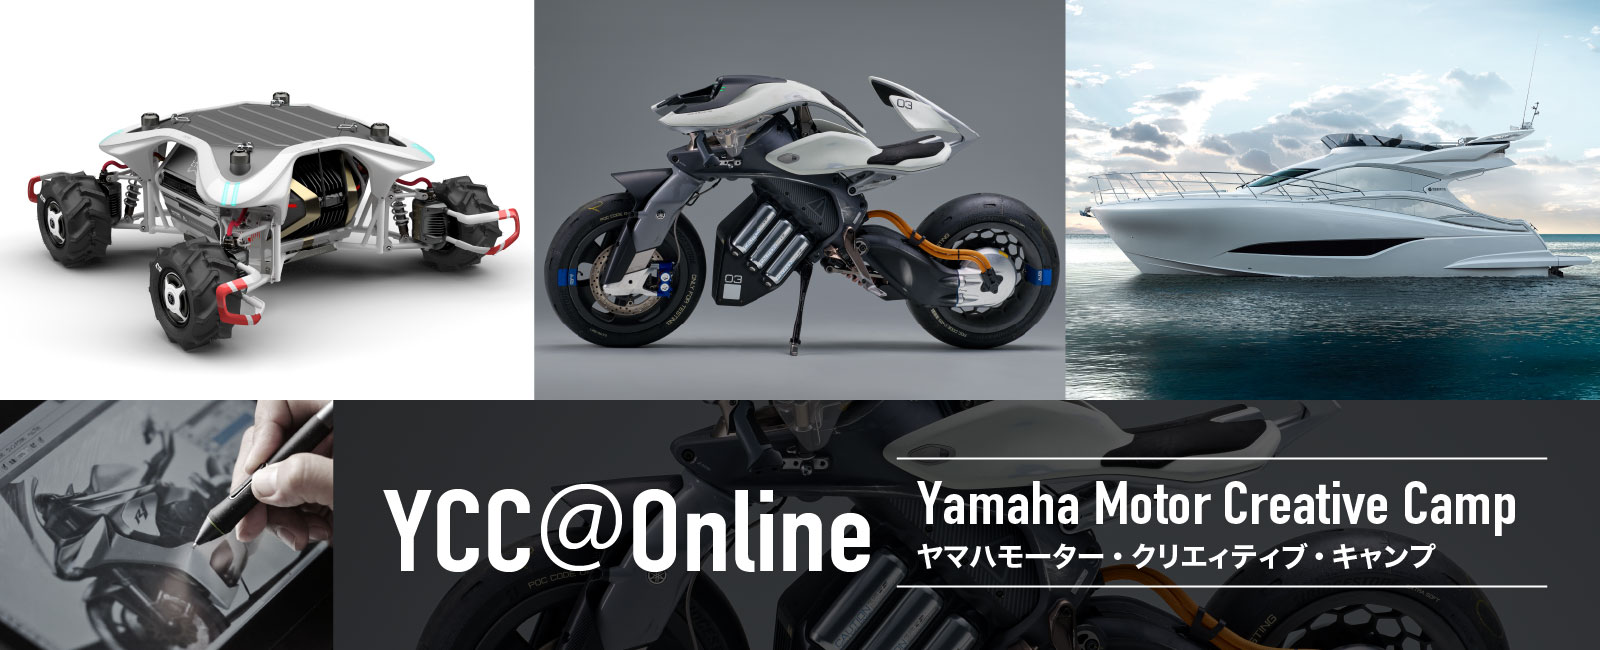 2021 Yamaha Motor Creative Camp